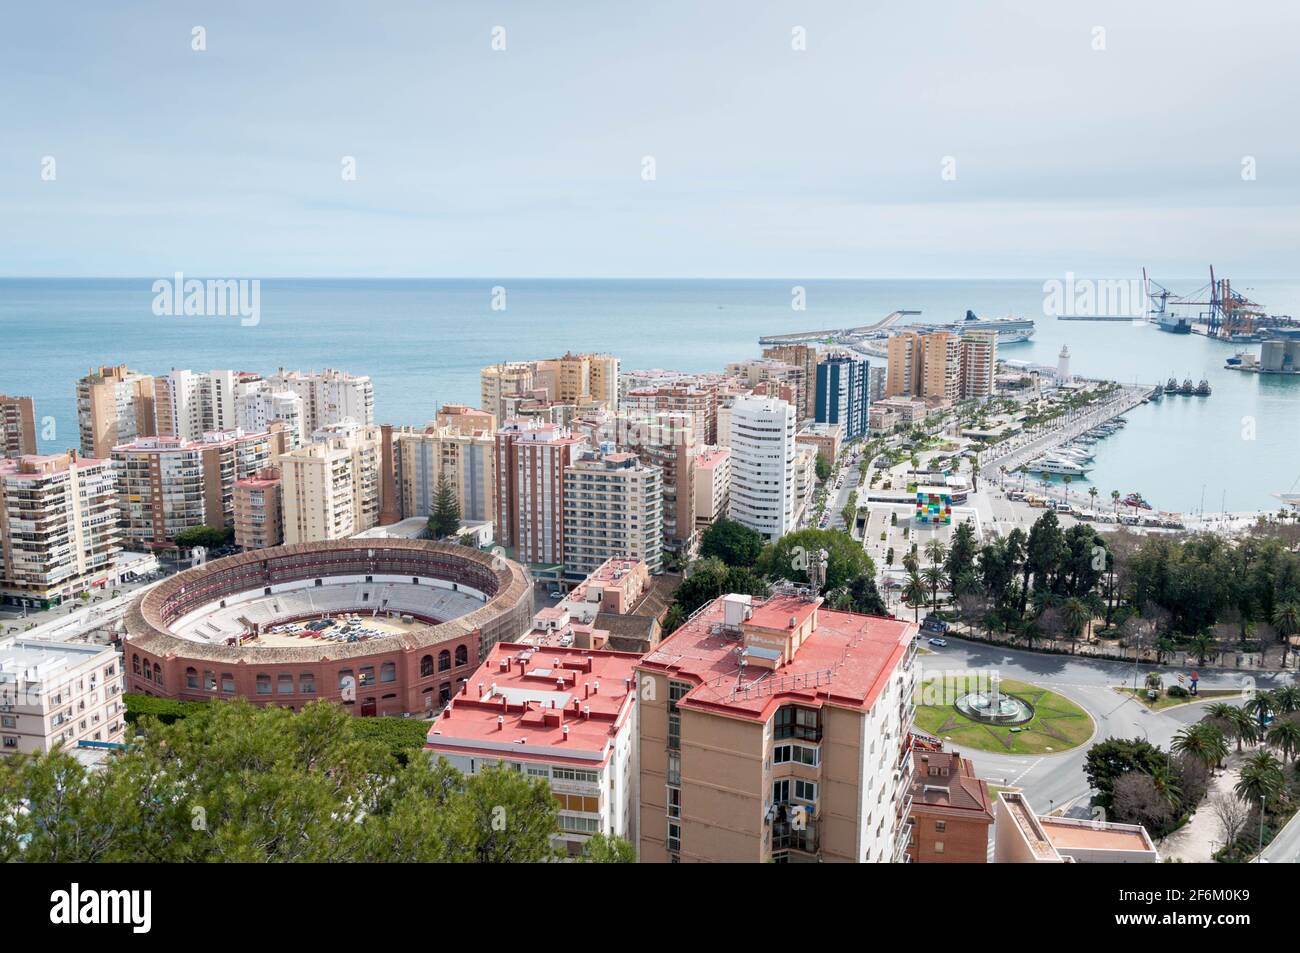 A bird's eye view over Malaga, Spain Stock Photo